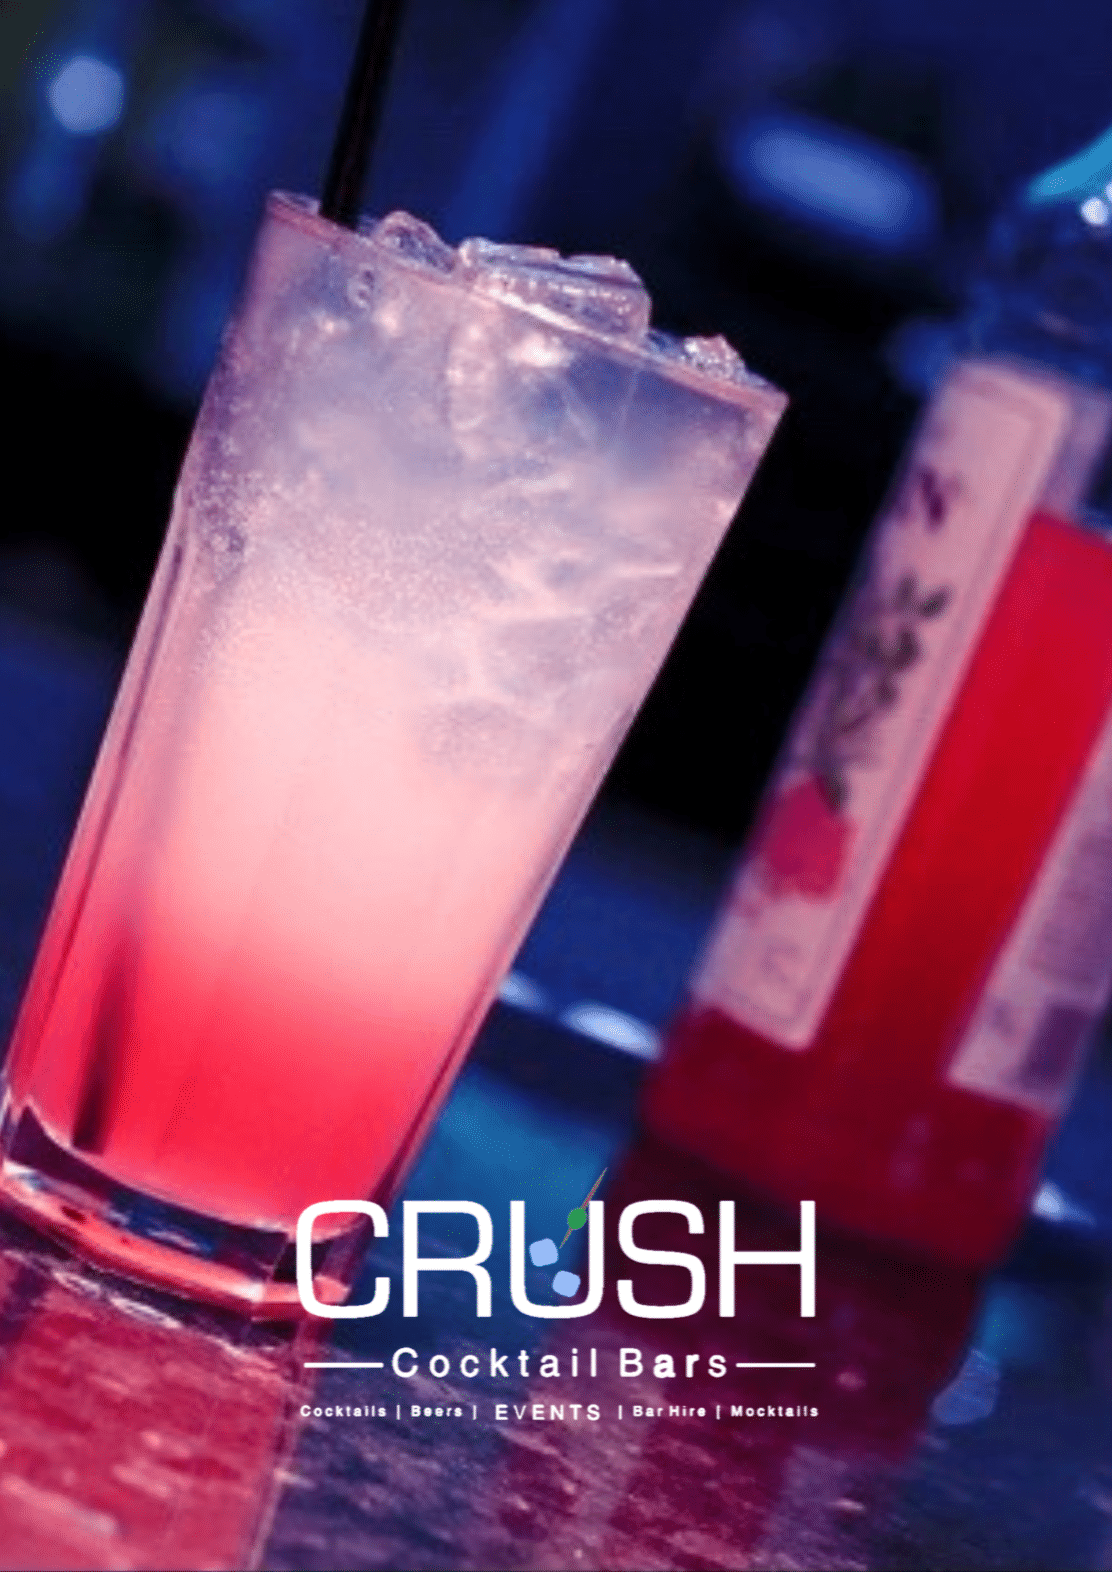 crush cocktail bars menu 13